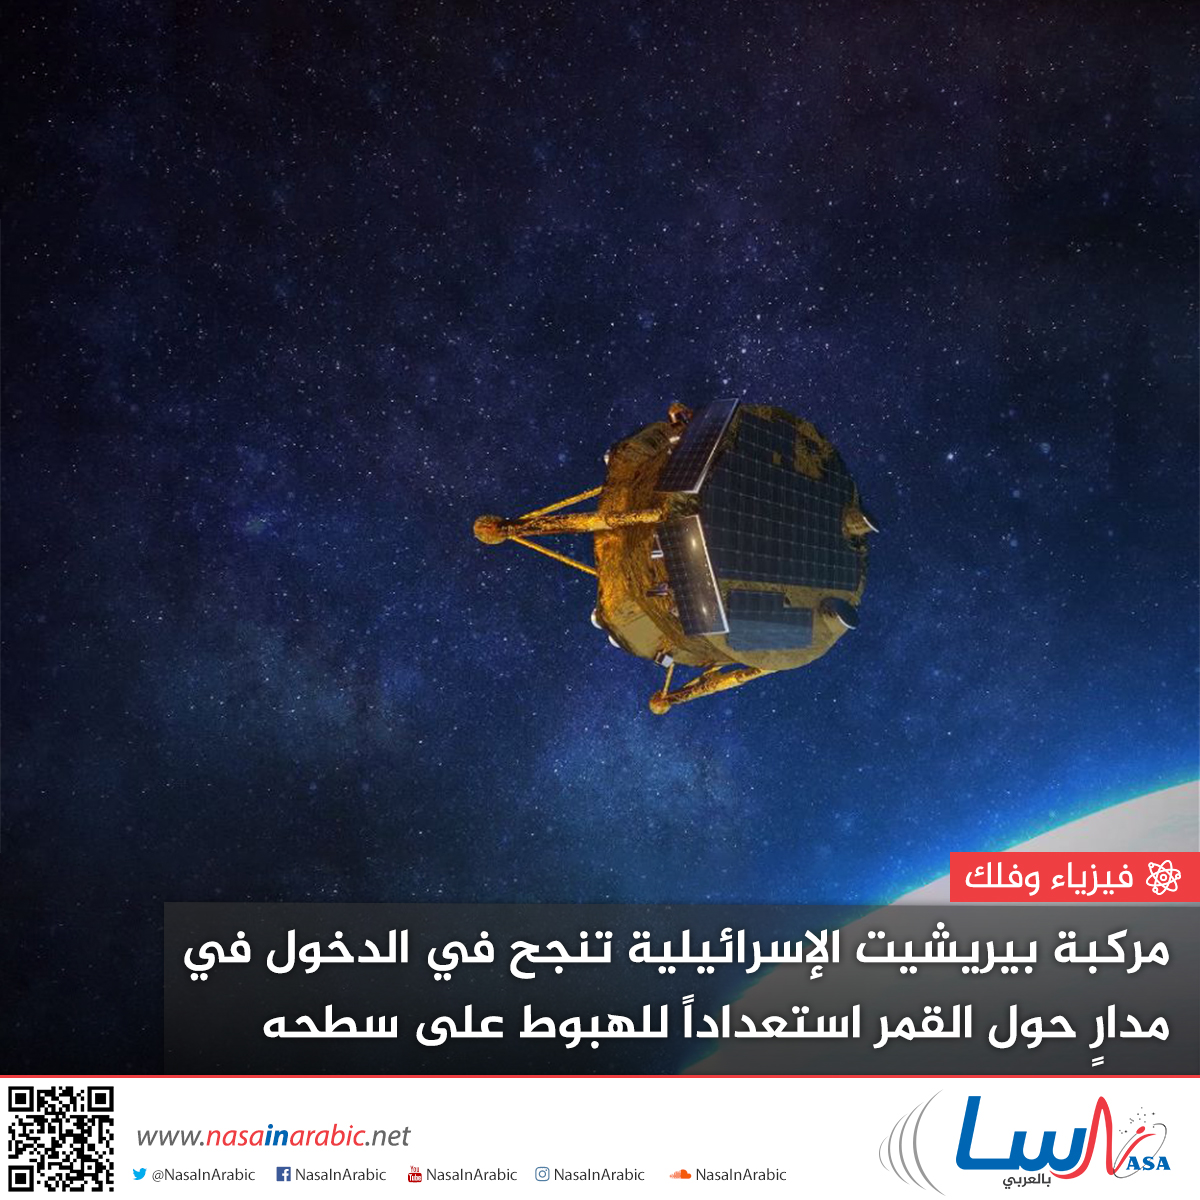 مركبة بيريشيت الإسرائيلية تنجح في الدخول في مدارٍ حول القمر استعداداً للهبوط على سطحه يوم الخميس 11 أبريل/نيسان